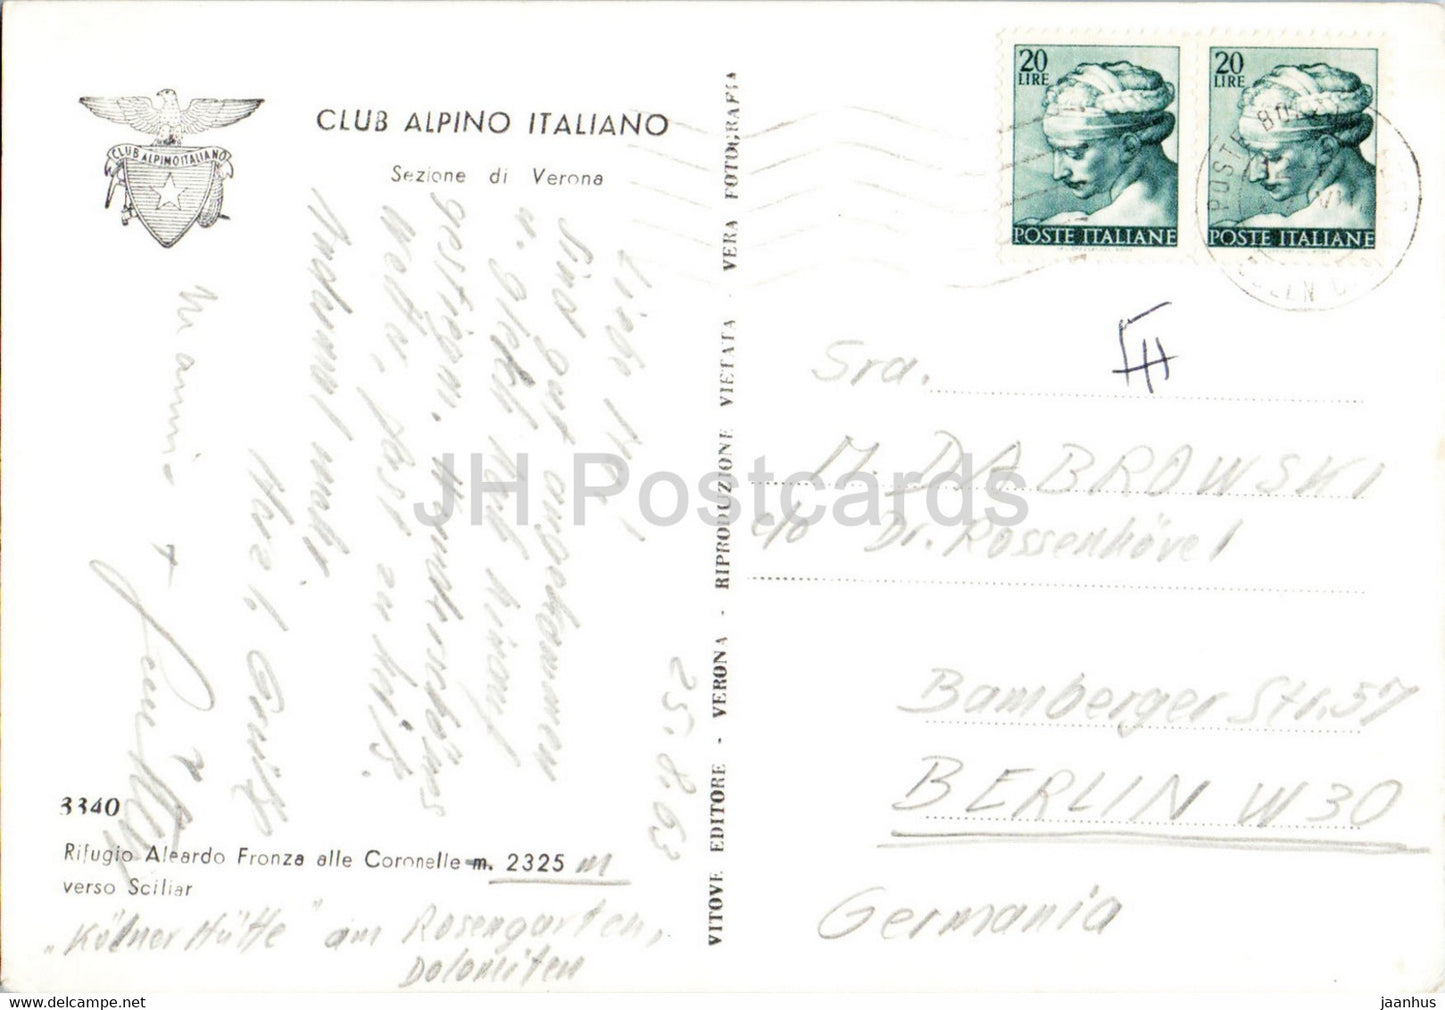 Rifugio Aleardo Fronza alle Coronelle verso Sciliar - Club Alpino Italiano - 1963 - Italy - used